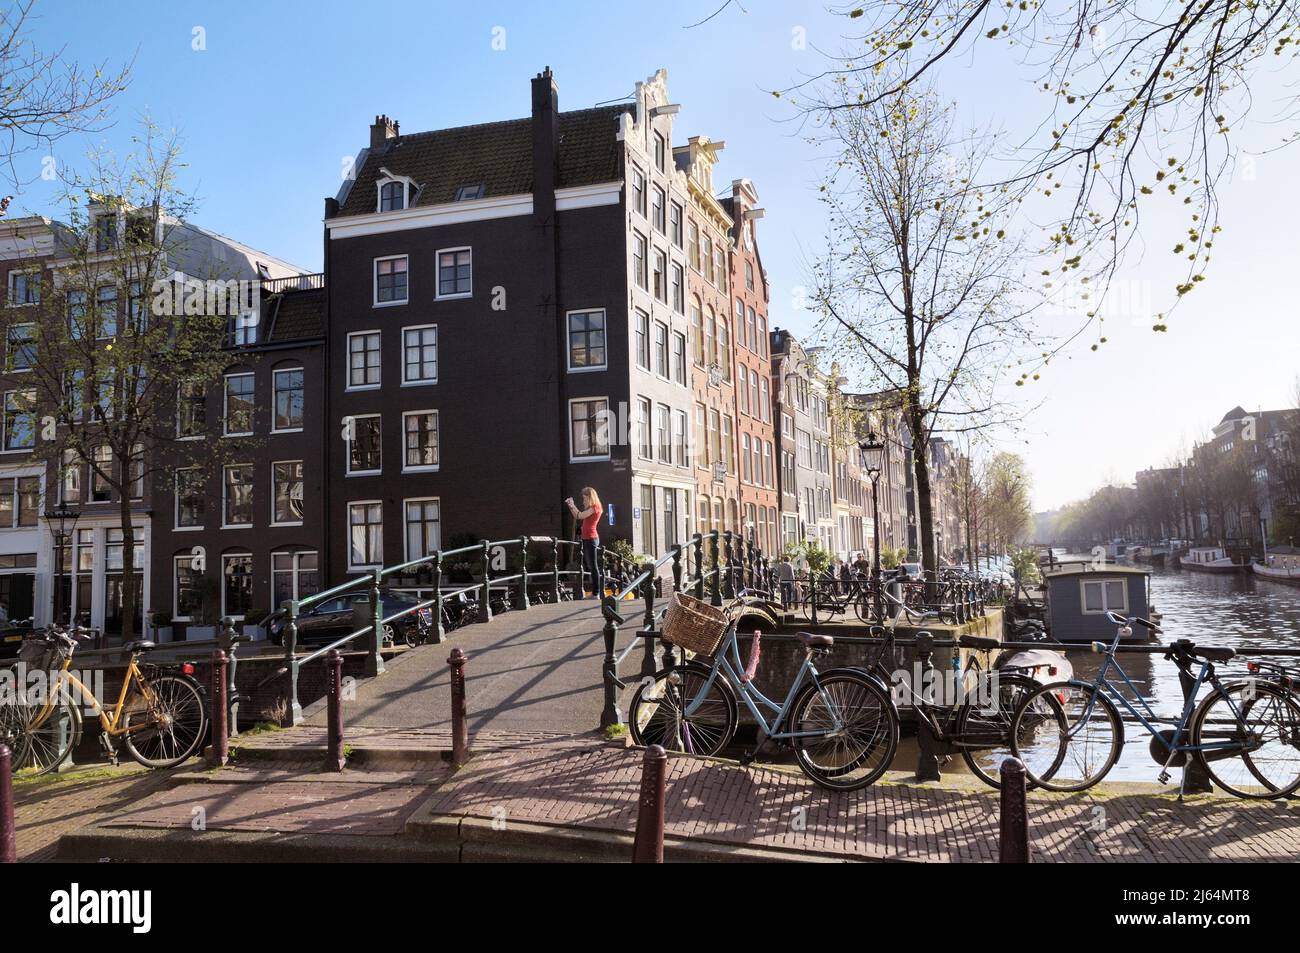 Mujer joven tomando una foto en un puente en la esquina de Brouwersgracht y el canal Herengracht, Jordaan, Amsterdam, Holanda del Norte, Países Bajos, Europa Foto de stock